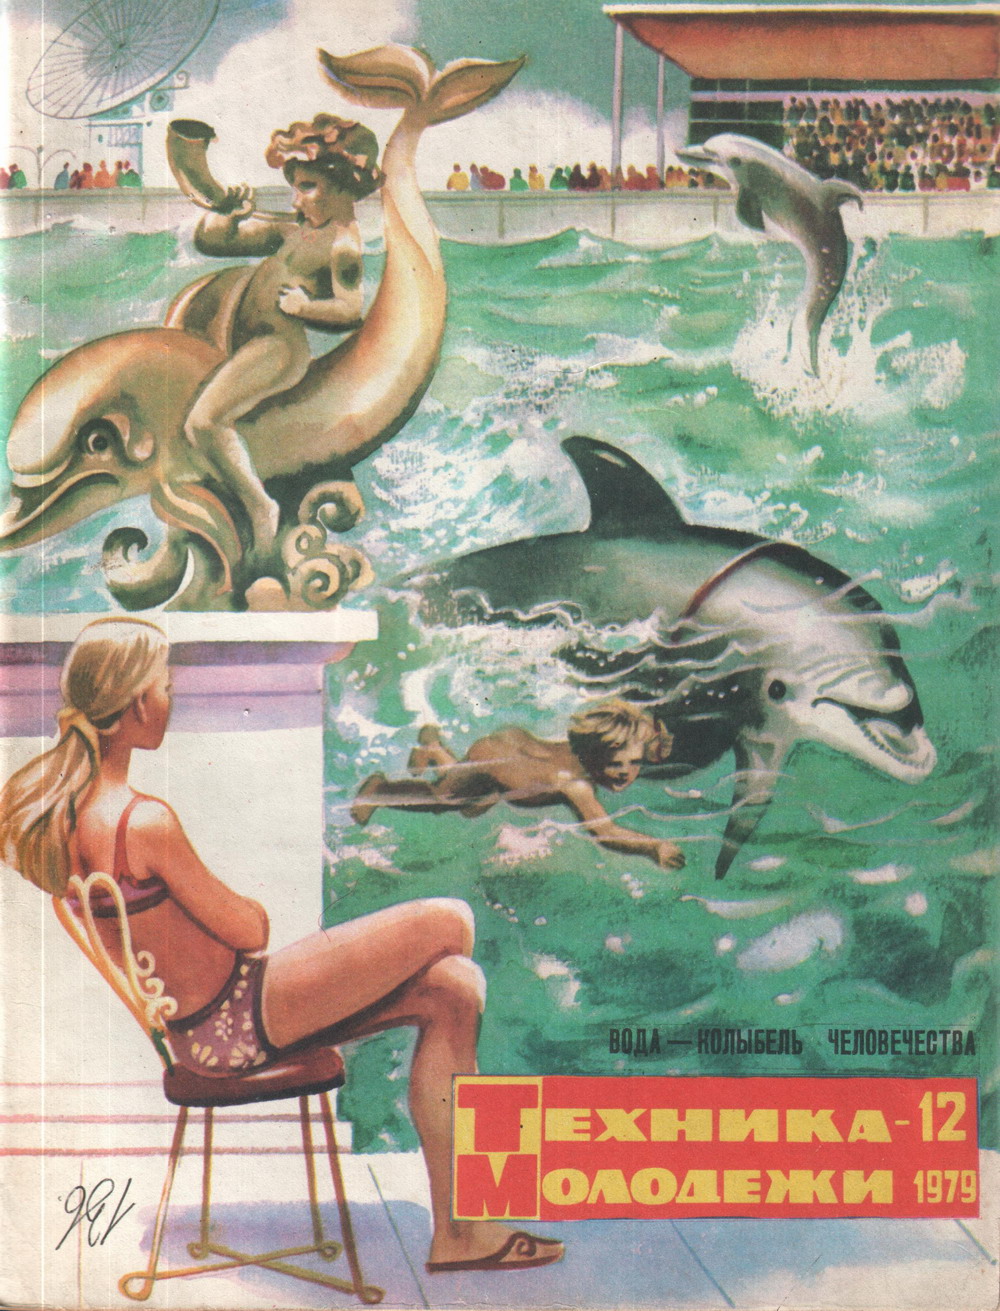 Дельфины и дети.jpg